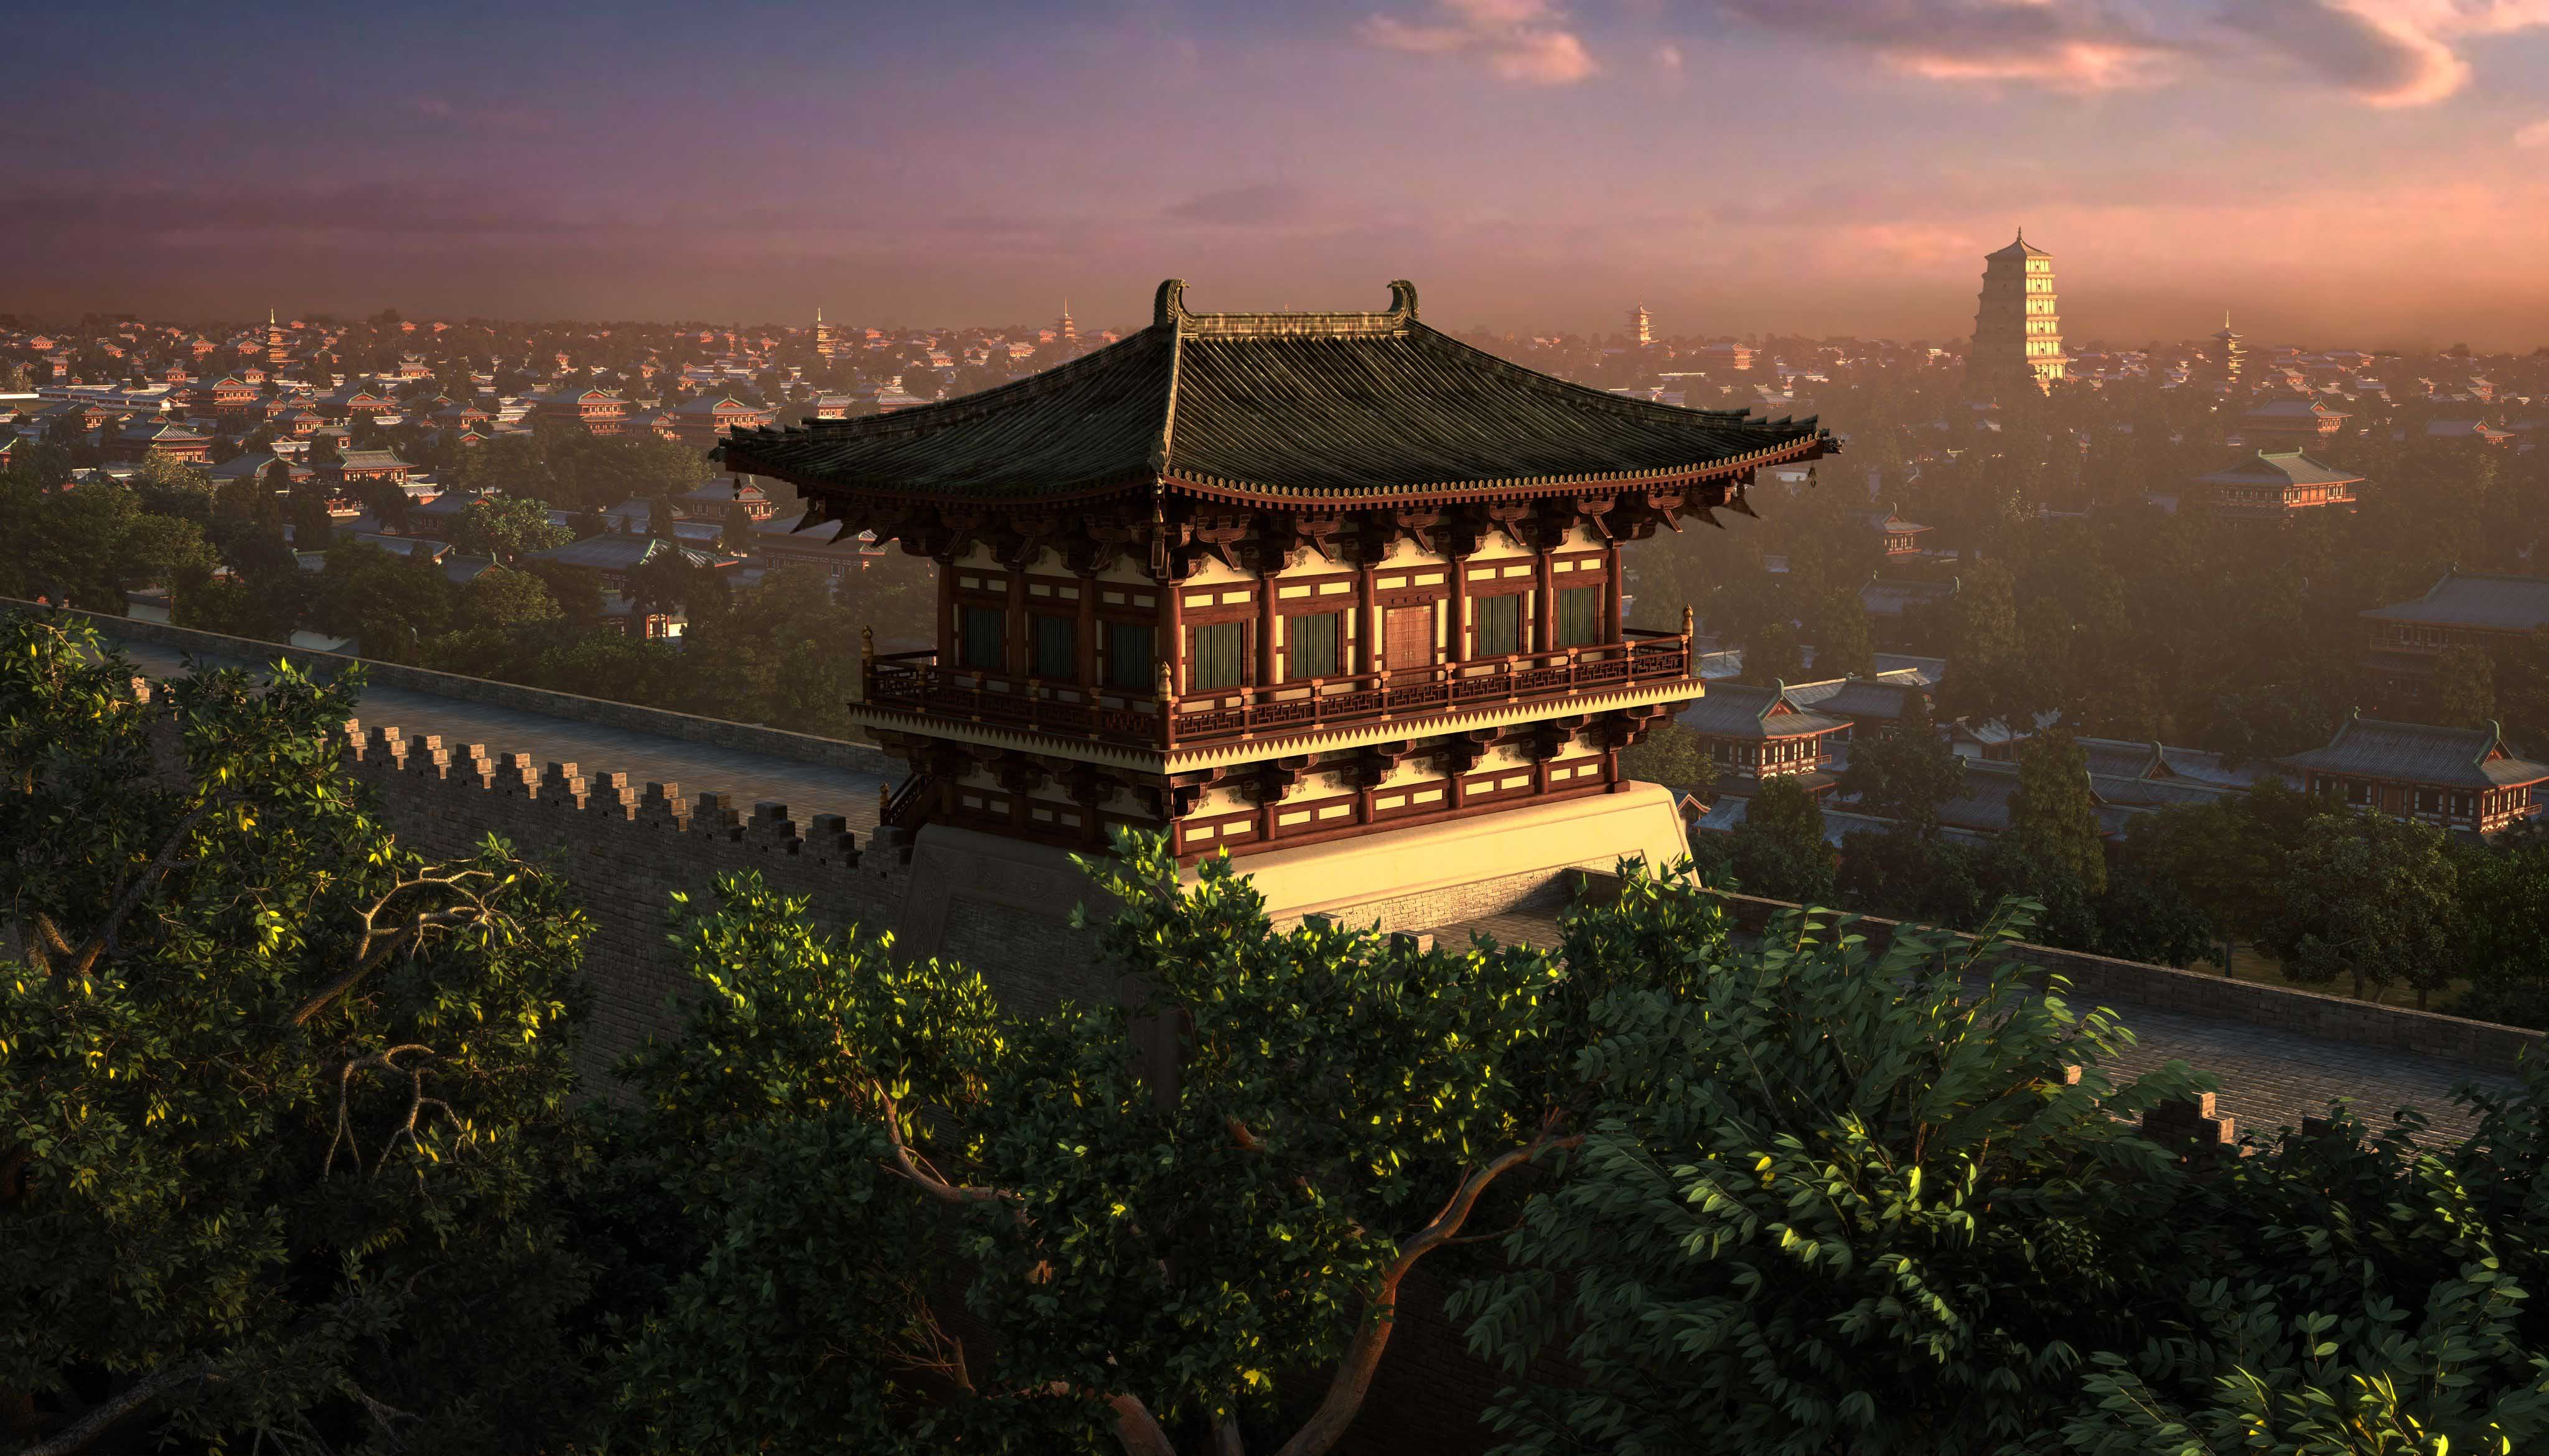 西安大明宫鼎盛时期面积是北京紫禁城的四倍